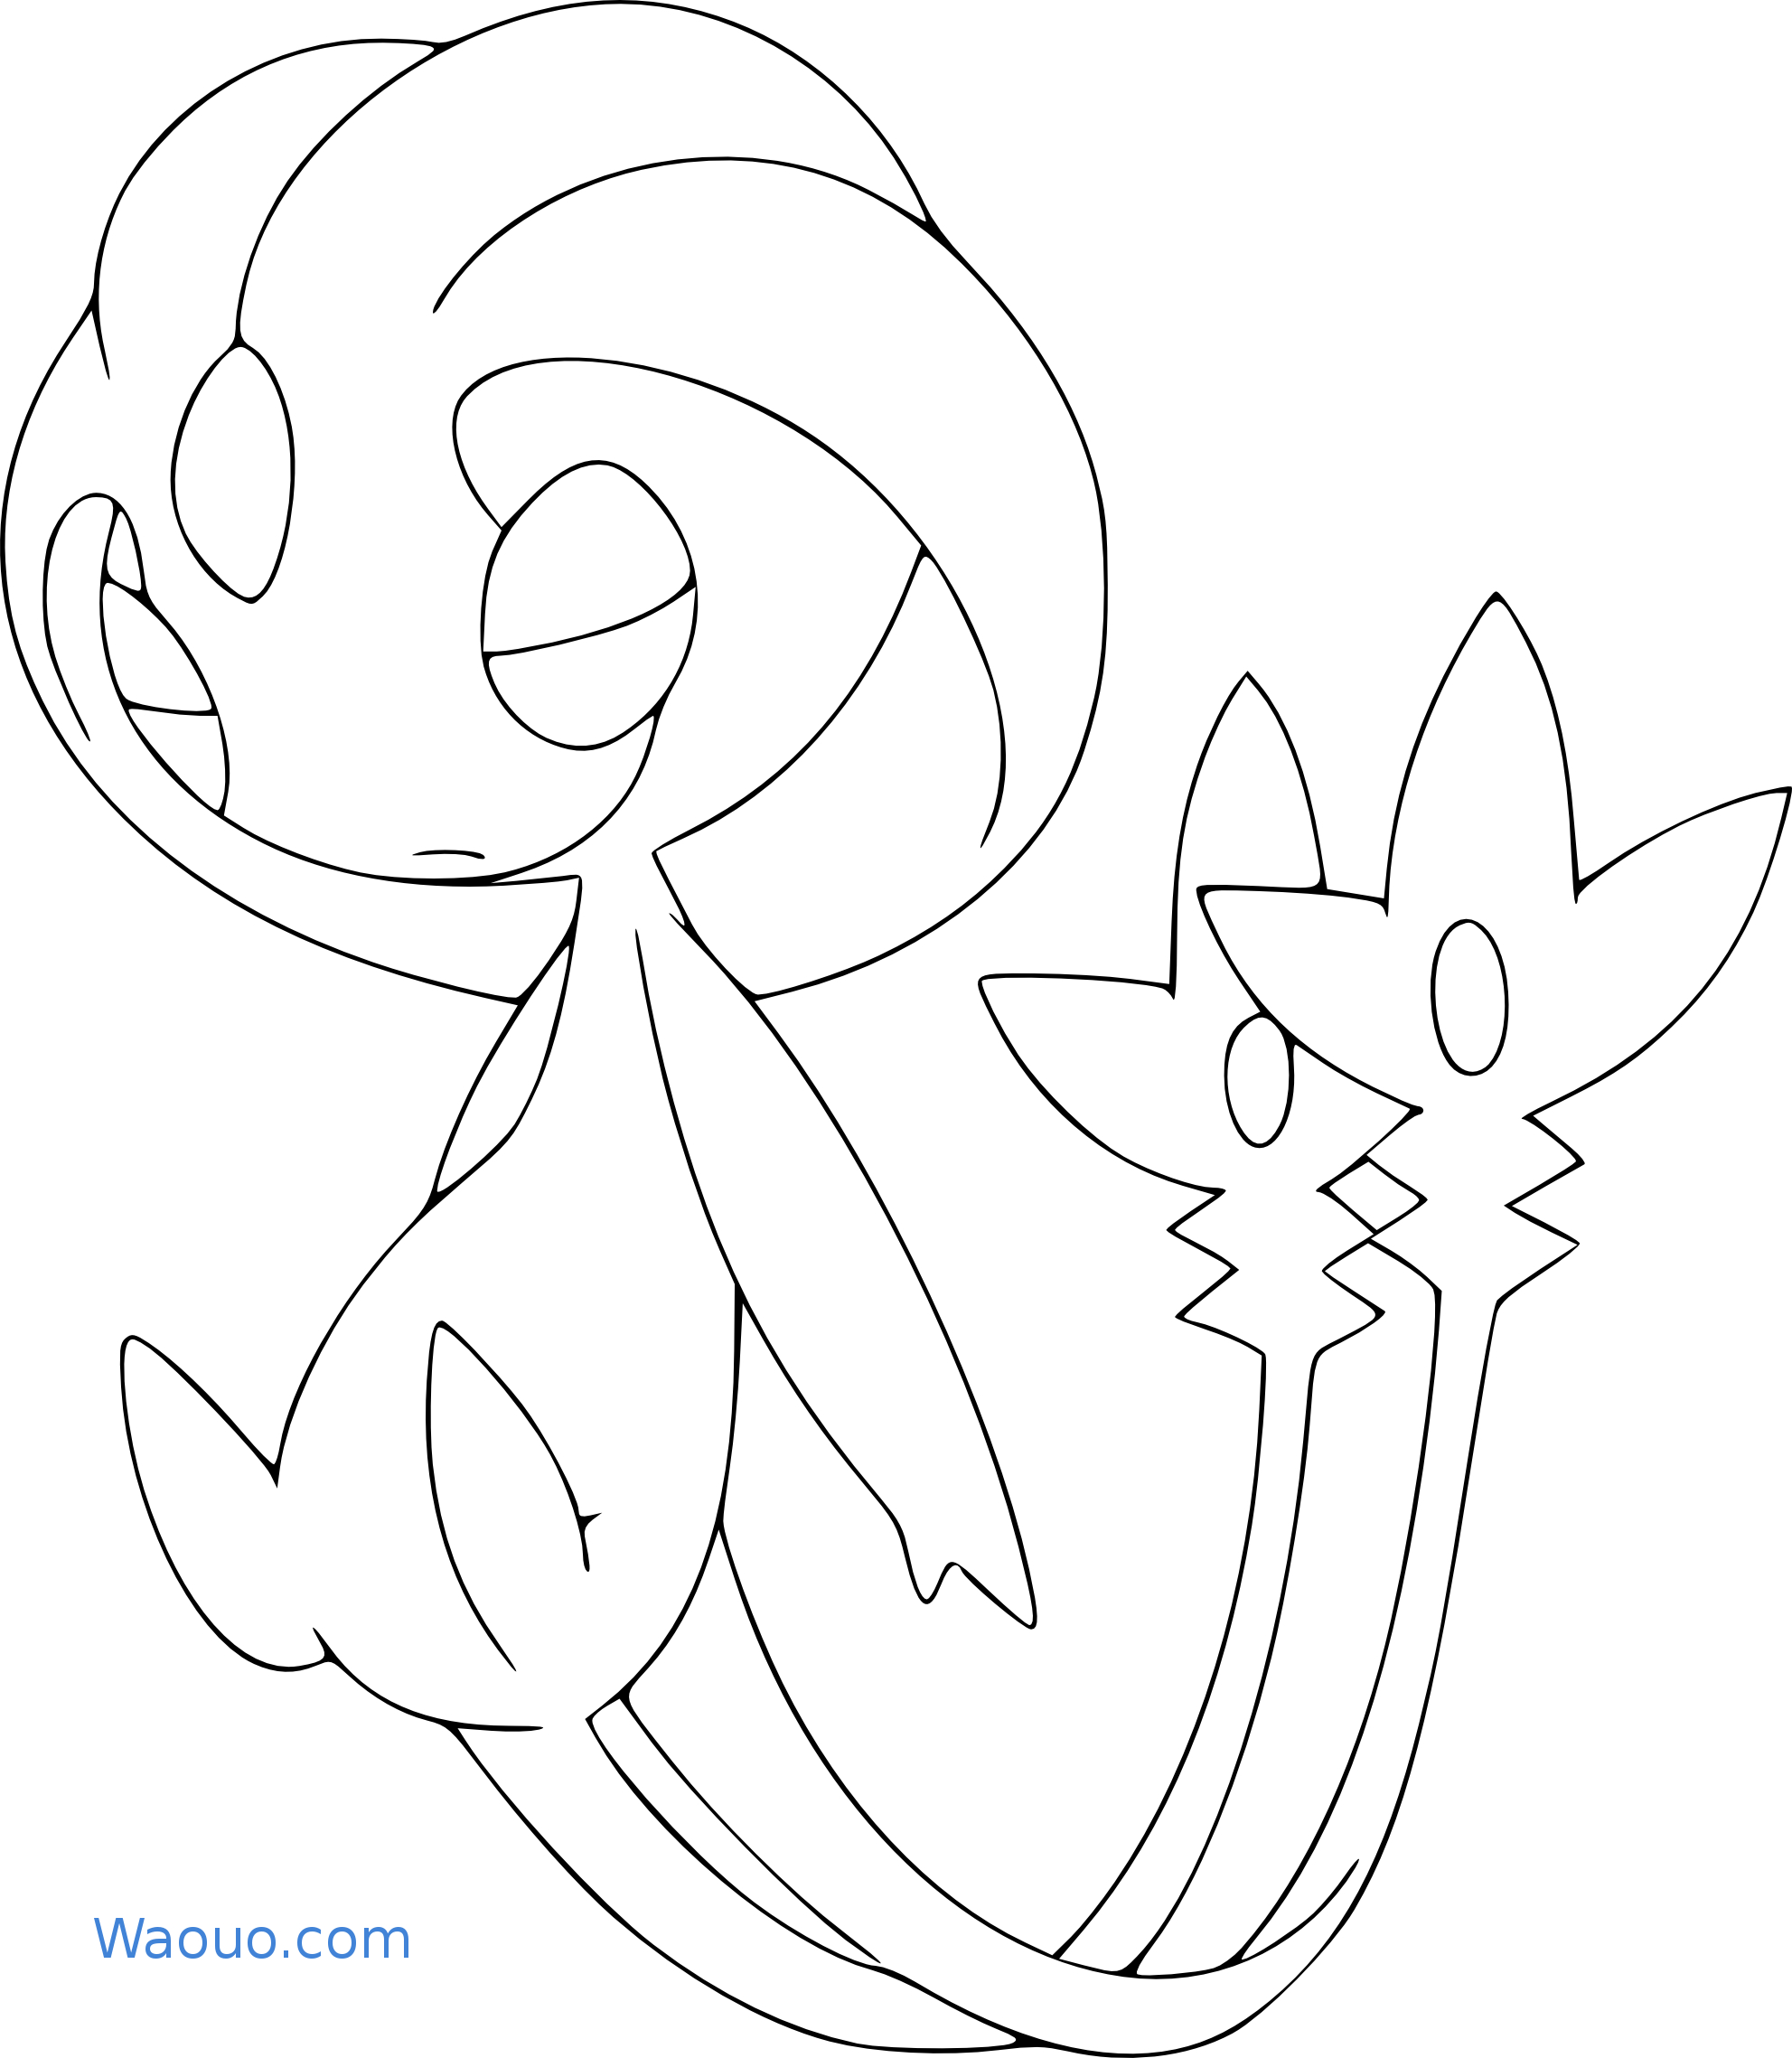 Disegno di Pokemon leggendario Uxie da colorare